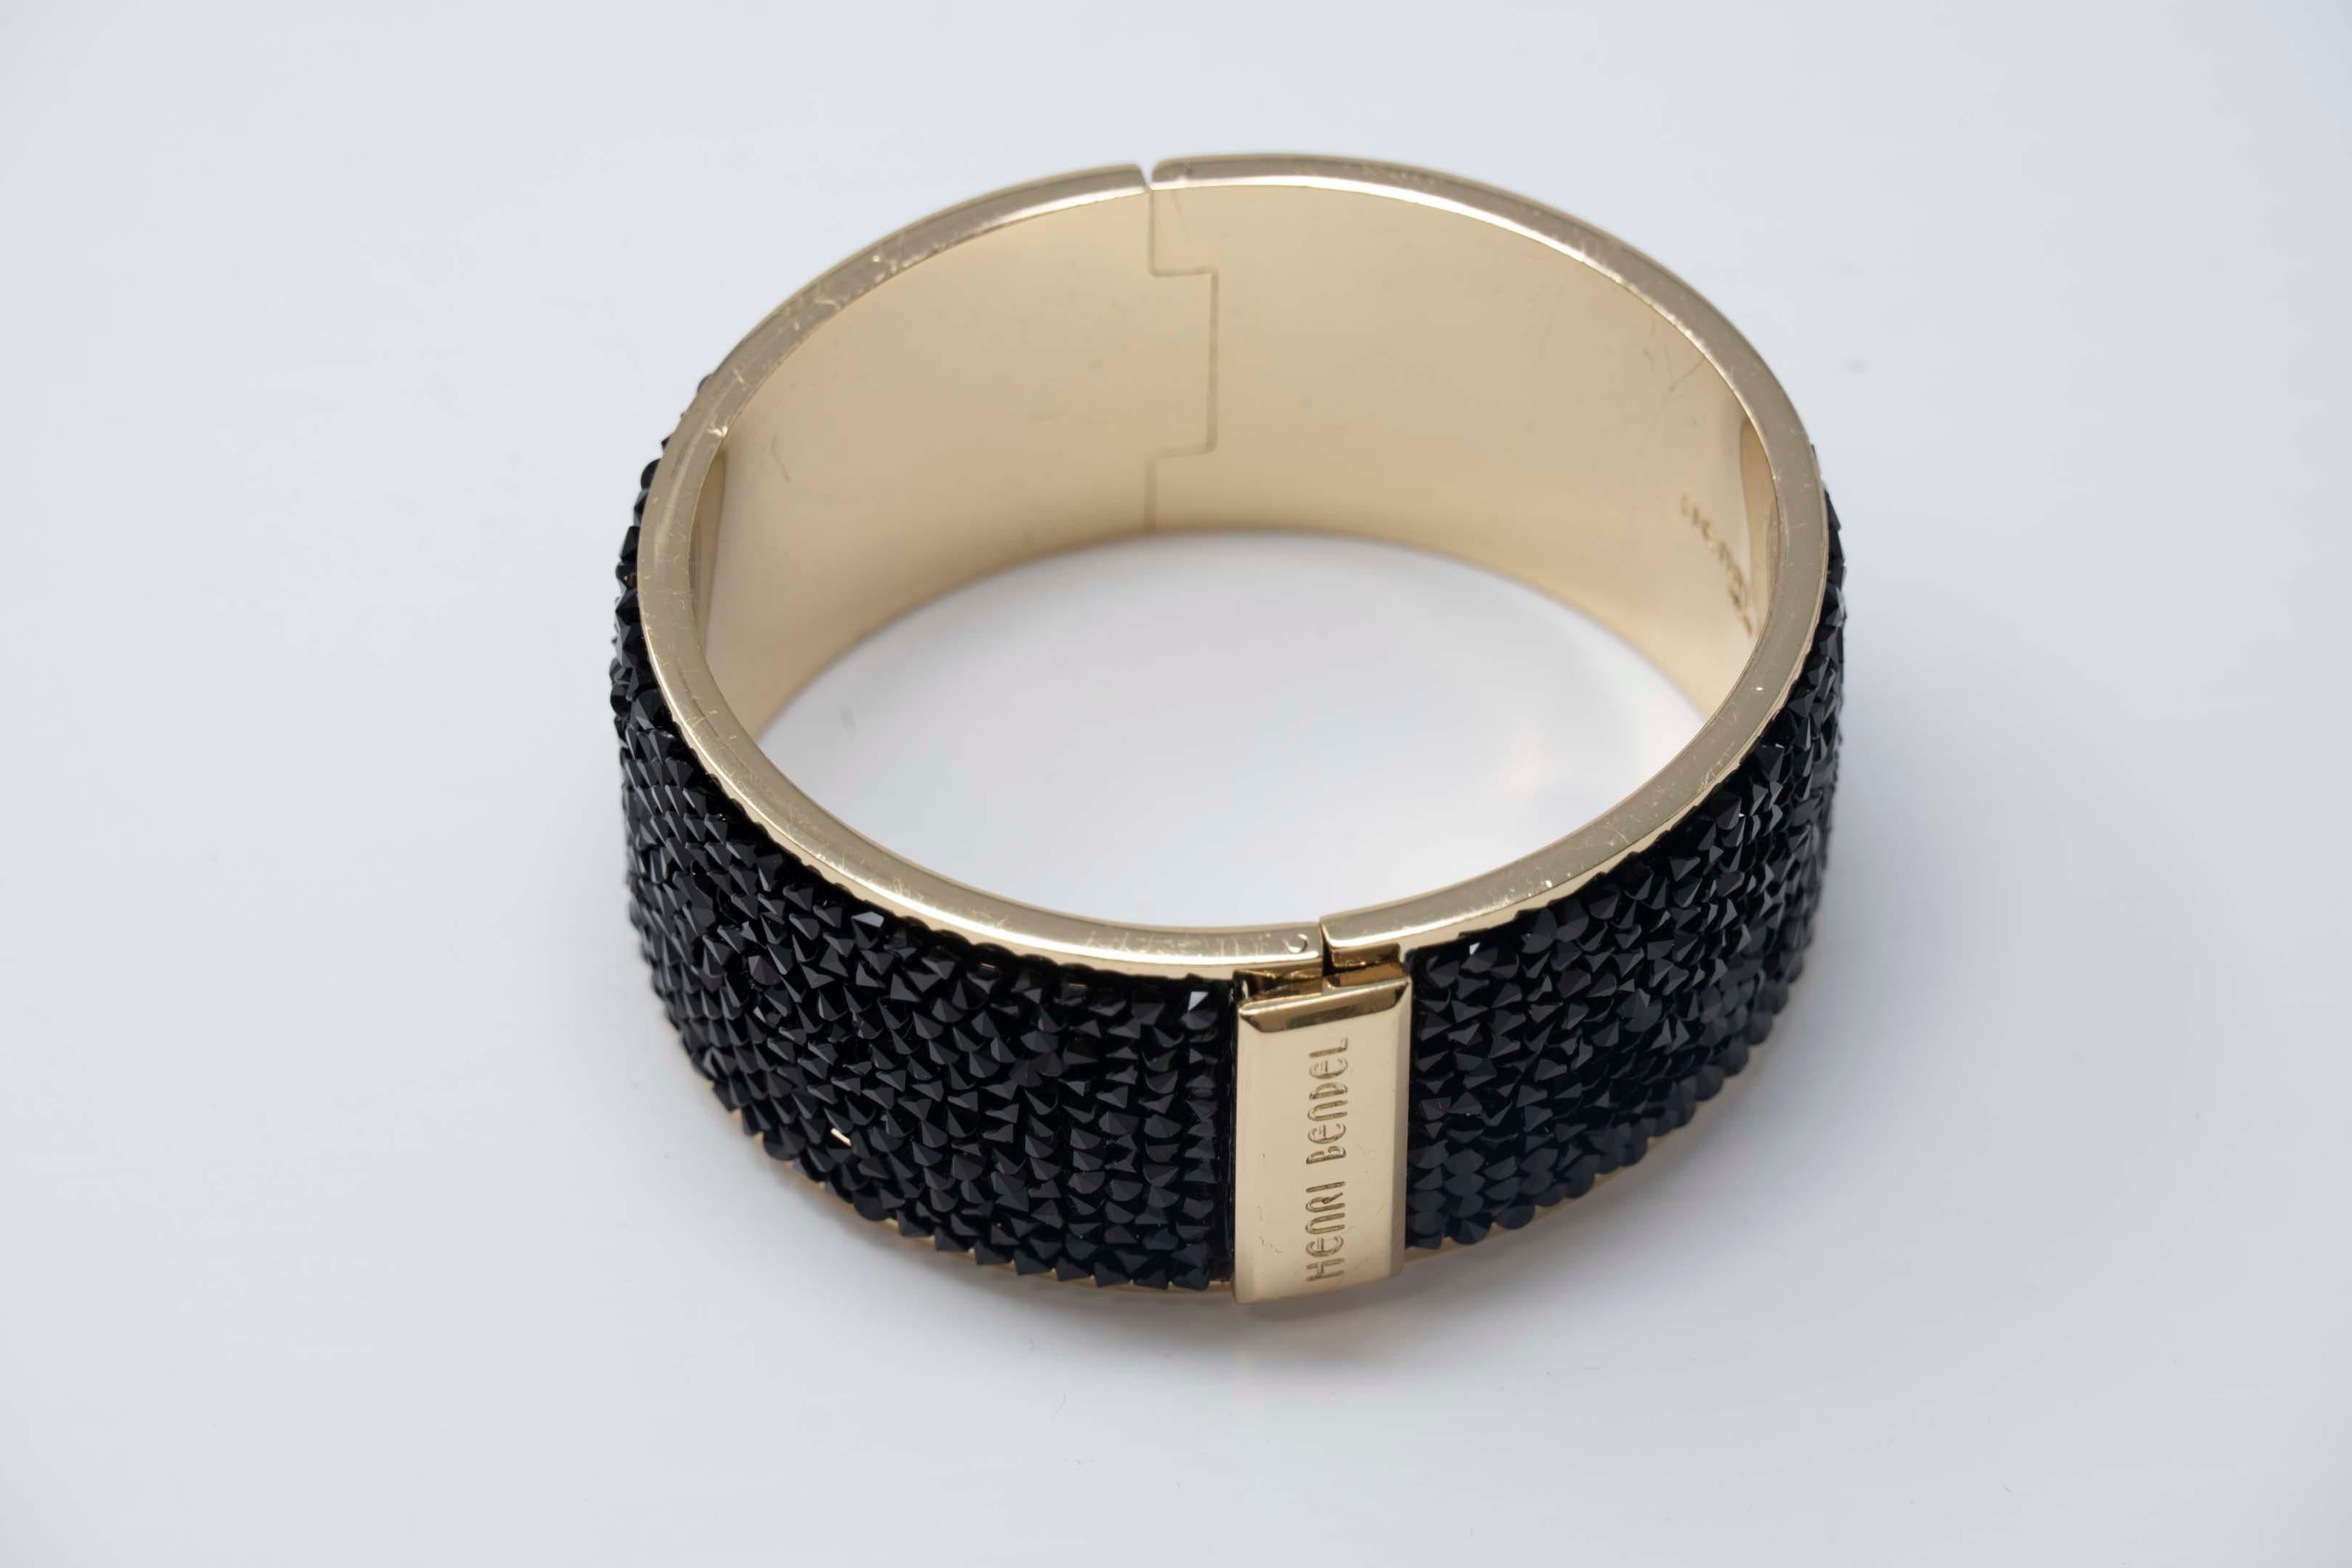 Henri Bendel NY goldfarbenes Armband mit Kristallpflasterstein. Das Armband misst 2 1/2 Zoll im Durchmesser an der breitesten Stelle und 1 1/2 Zoll breit. Der Artikel ist auf der Innenseite gestempelt und in ausgezeichnetem Zustand.
